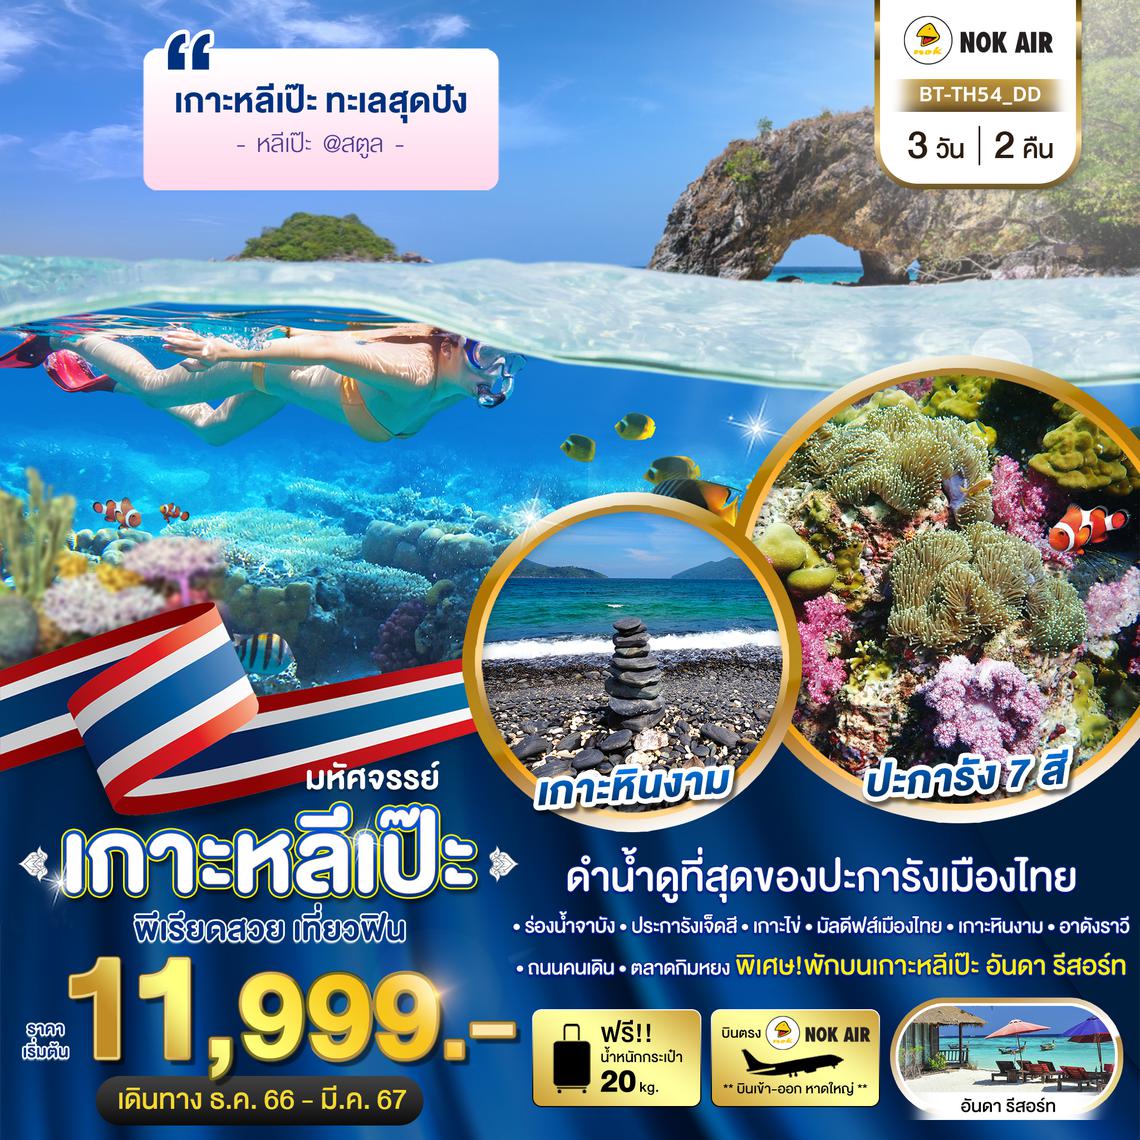 ทัวร์ไทย เกาะหลีเป๊ะ ทะเลสุดปัง ดำน้ำดูที่สุดของประการังเมืองไทย 3 วัน 2 คืน